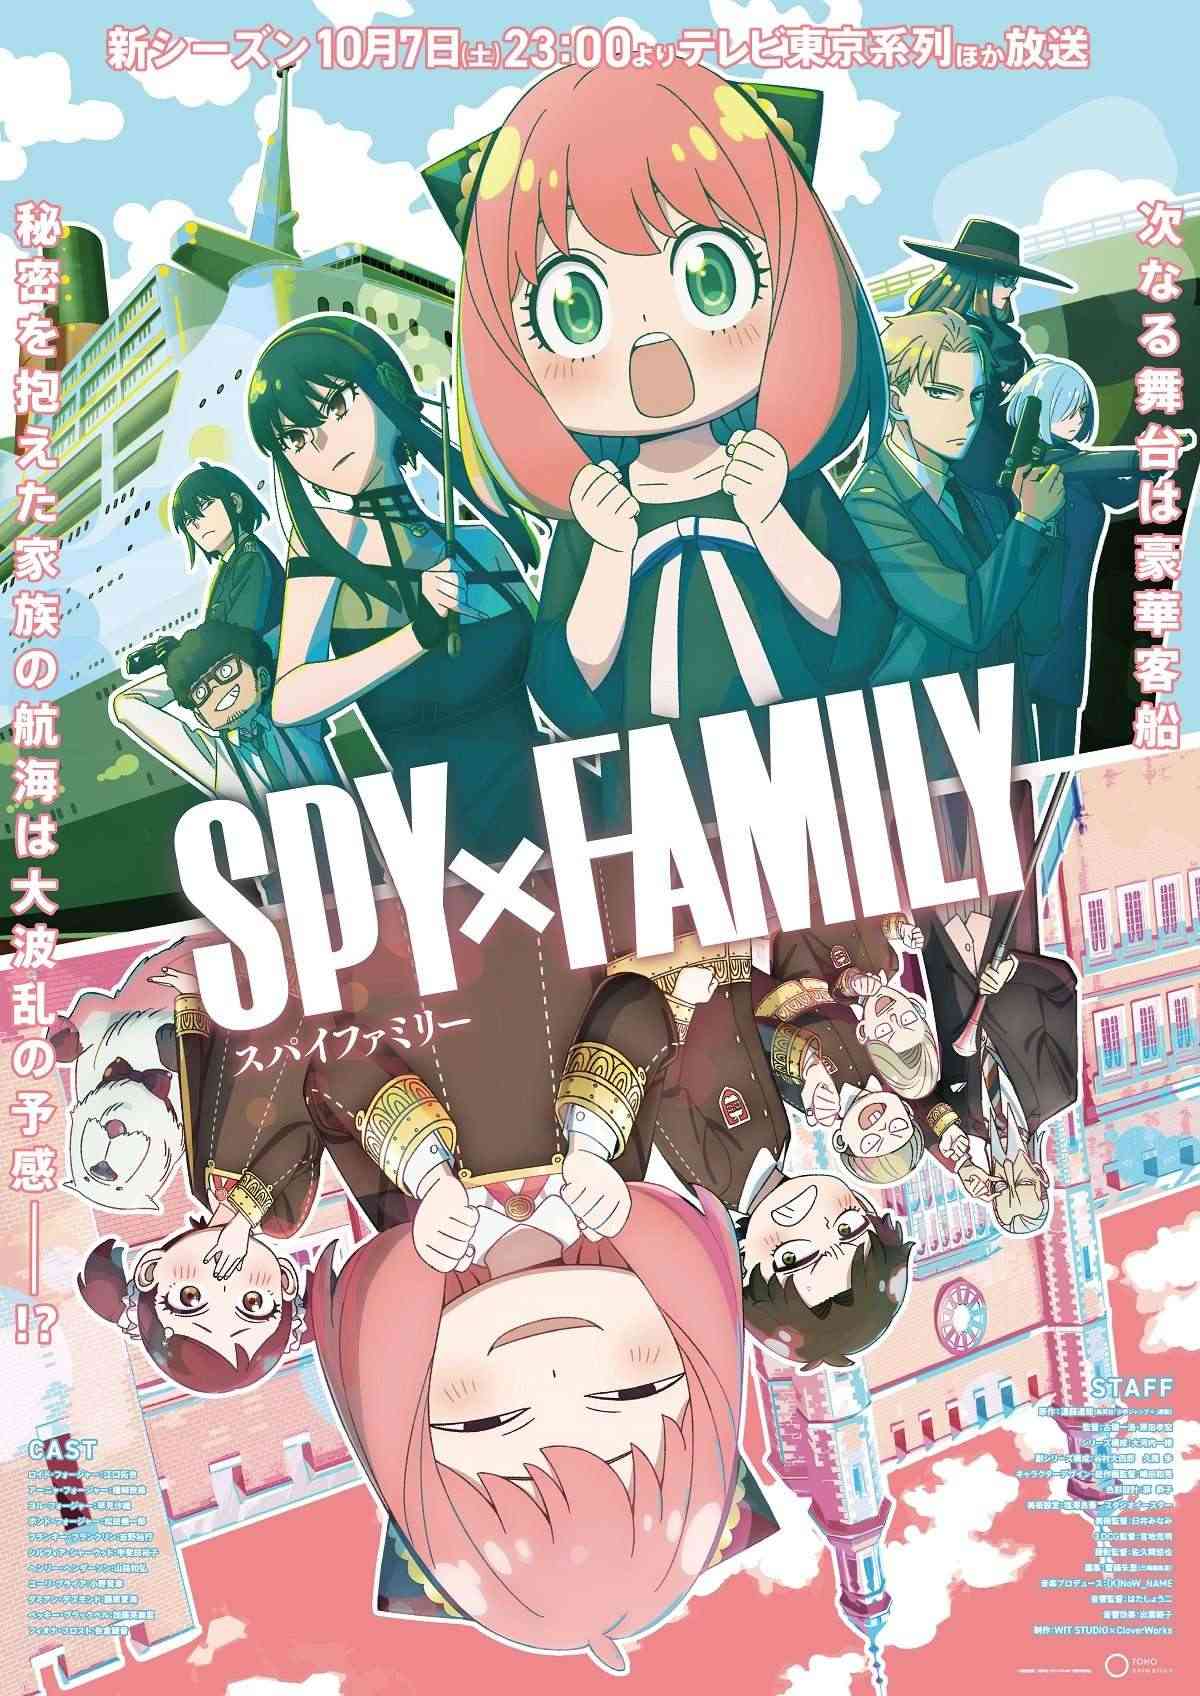 Thời điểm phát hành cho anime Spy x Family ss2 được ấn định